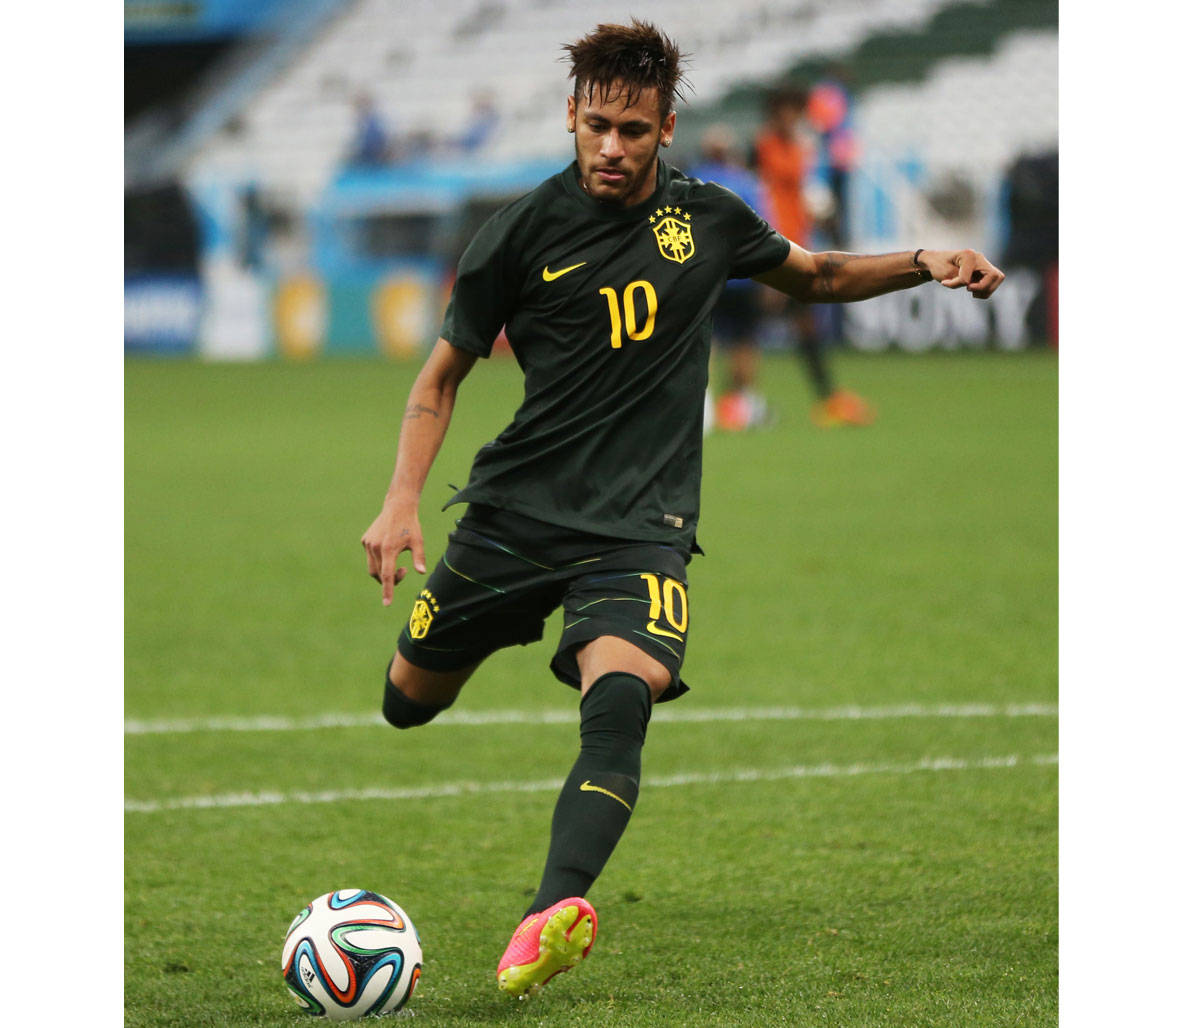 Jugadoresde Fútbol Neymar Pateando Fondo de pantalla